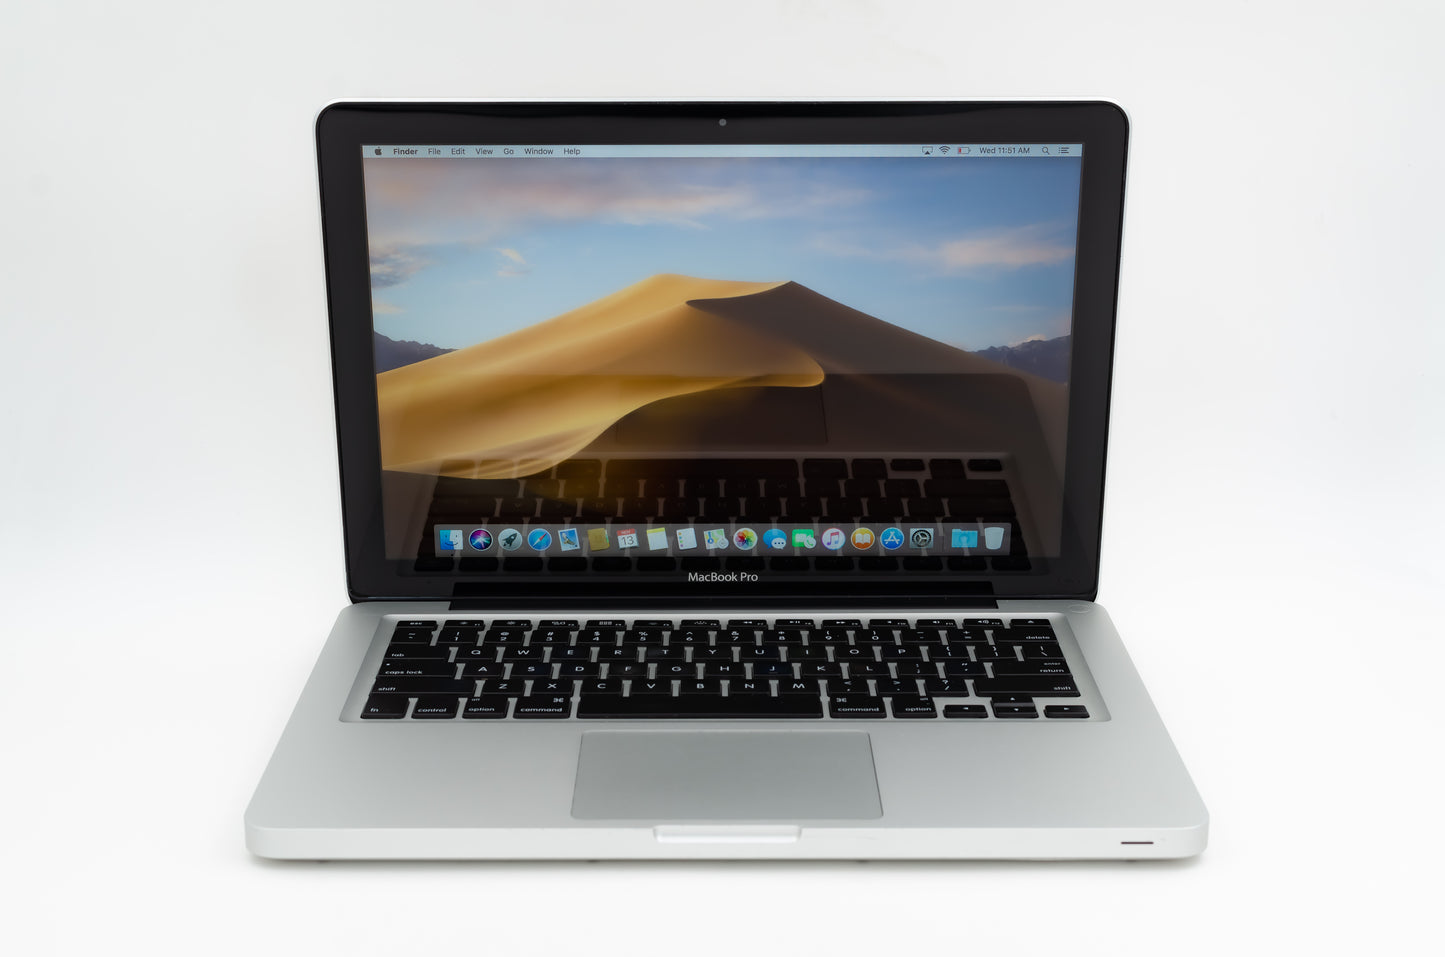 apple-mid-2009-13.3-inch-macbook-pro-a1278-aluminum-c2d - 2.53ghz processor, 4gb ram, 940m - 256mb gpu-mb991ll/a-1